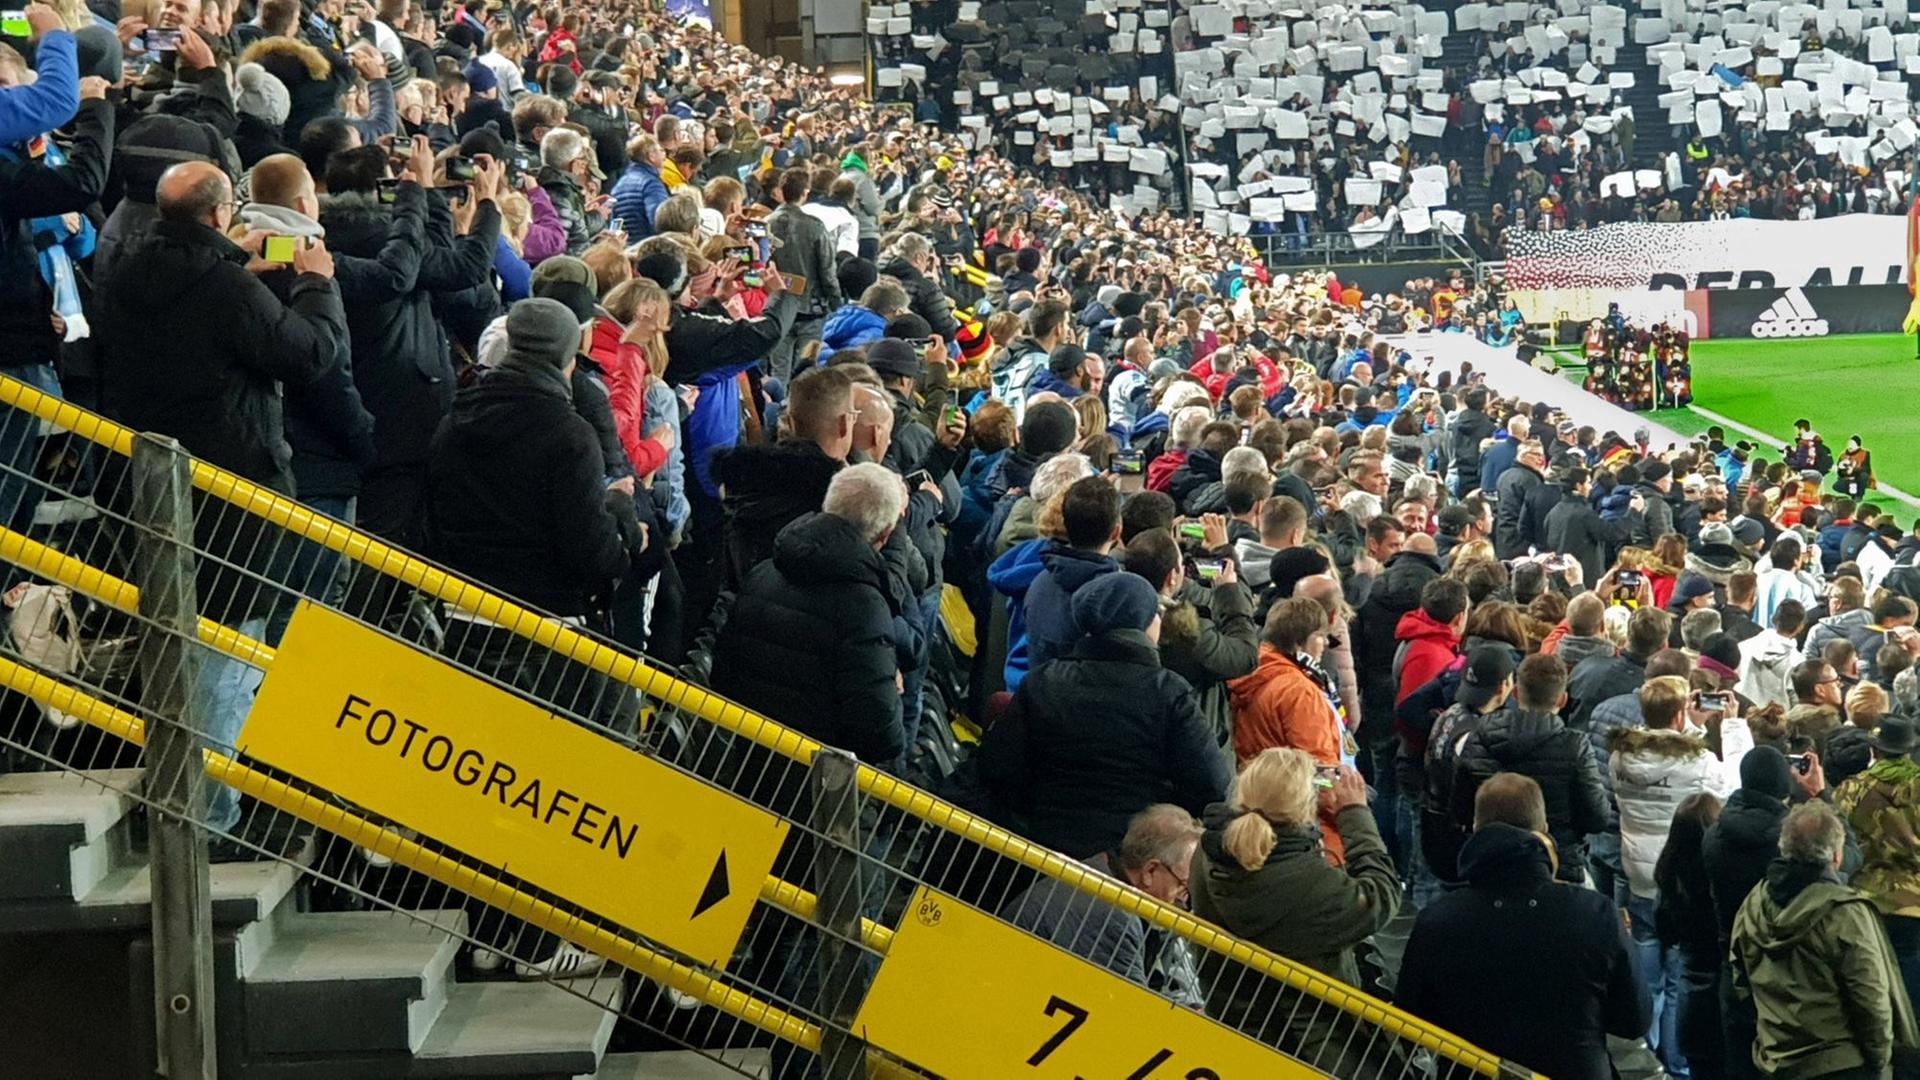 Eine volle Zuschauertribuene in einem Fussballstadion.